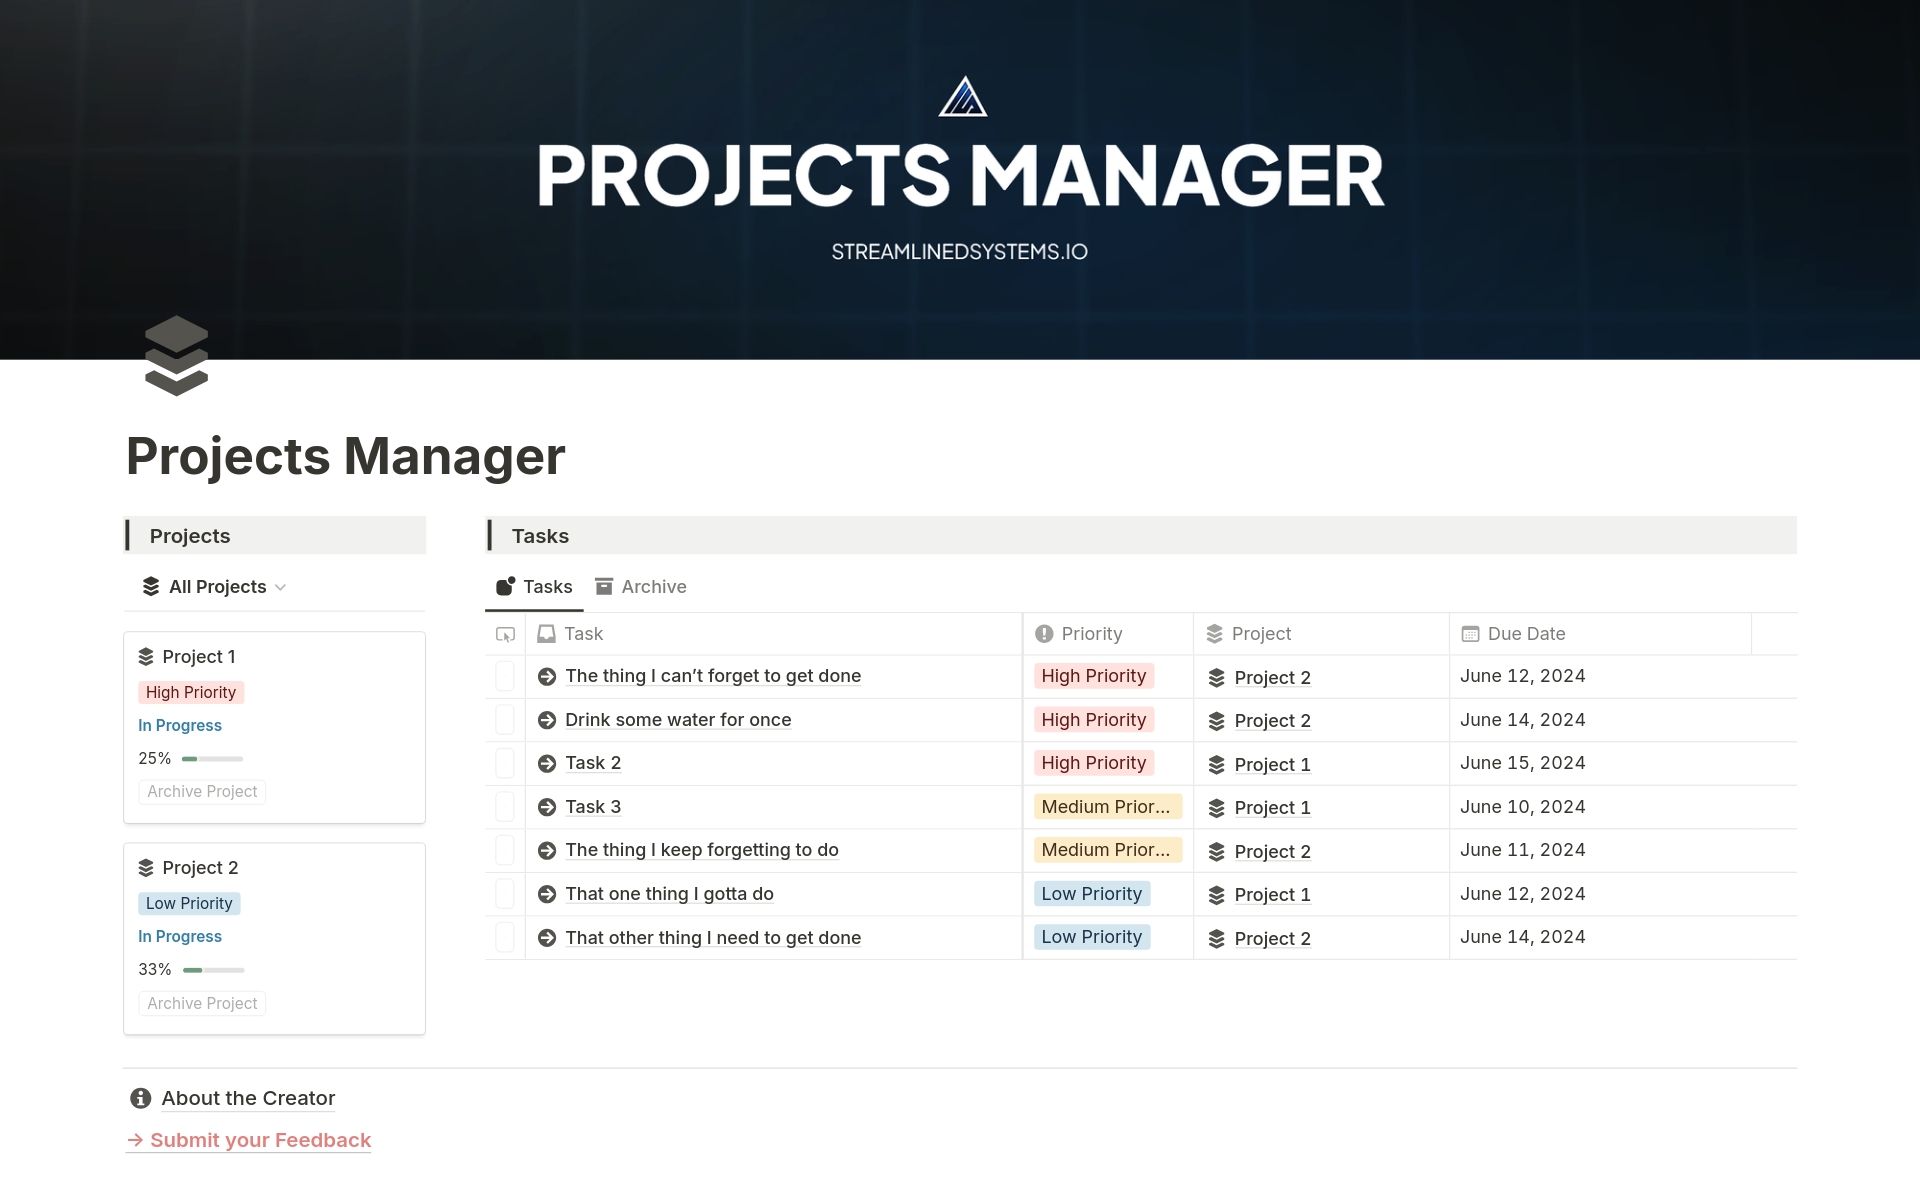 Vista previa de plantilla para Projects Manager